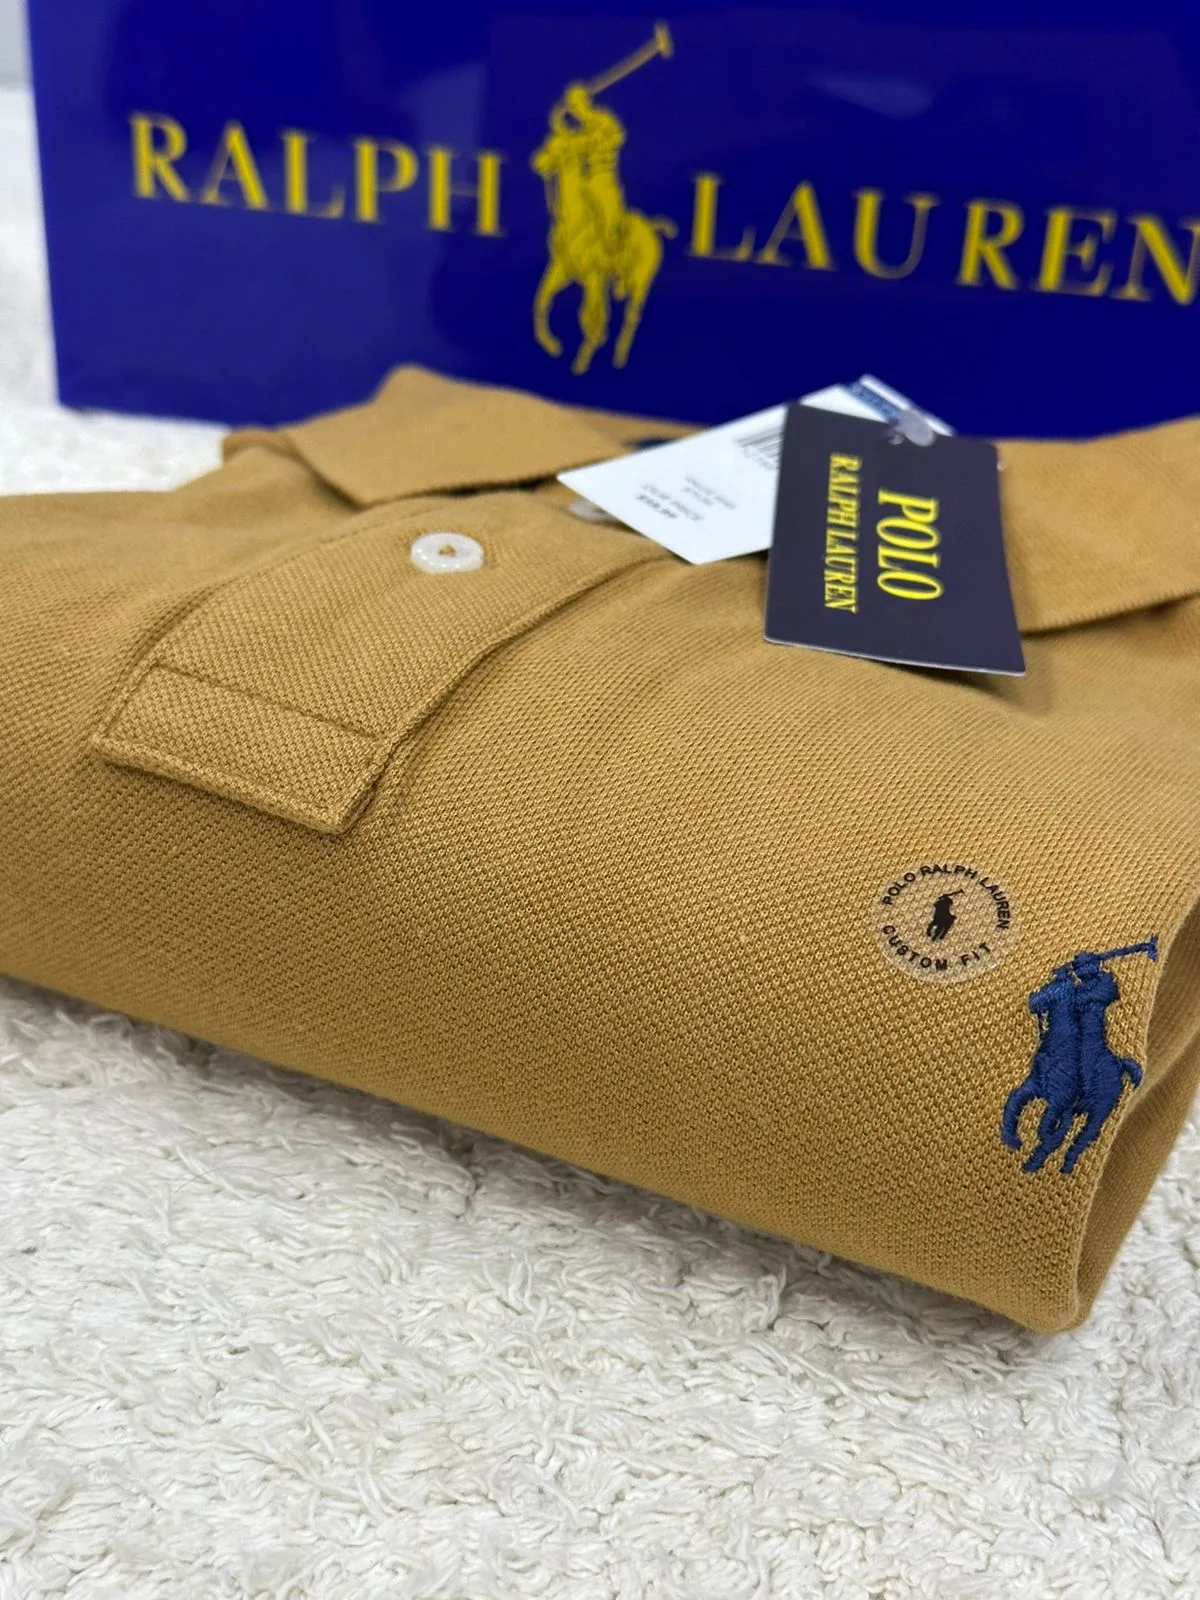 Camisetas Polo Ralph Lauren Original no Brasil com Preço de Outlet